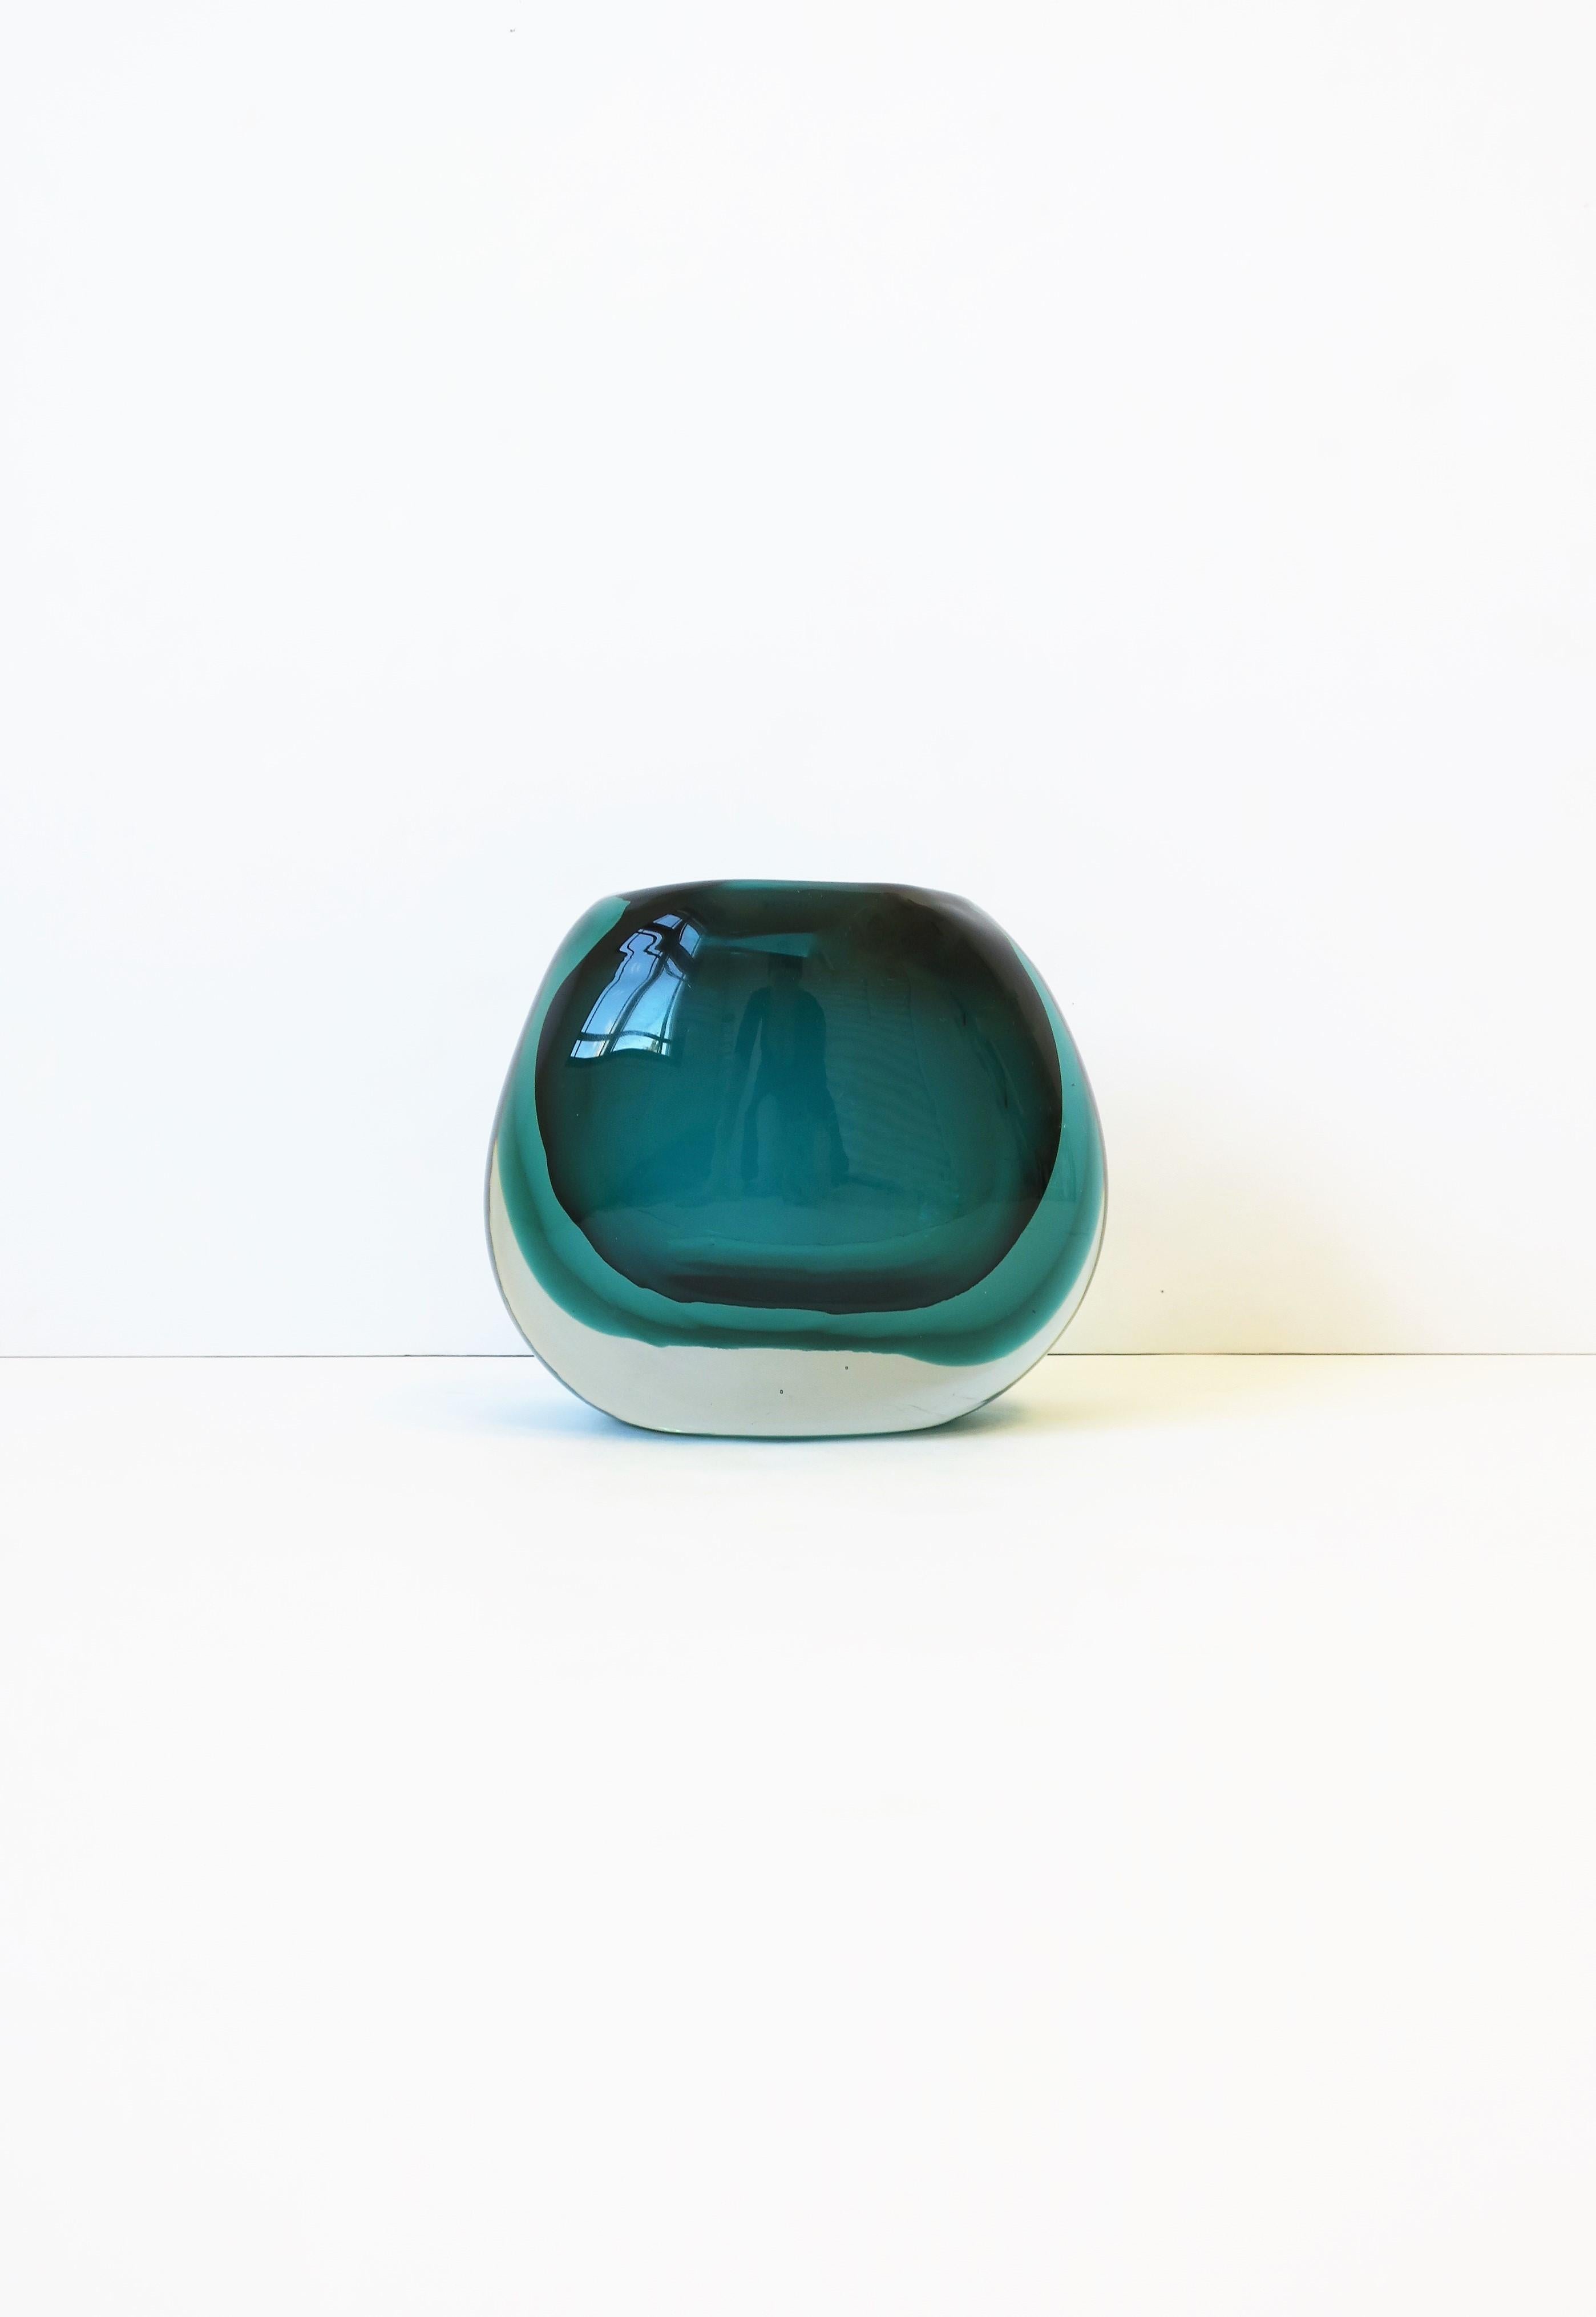 Magnifique vase en verre d'art italien de Murano, de couleur vert émeraude, dans le style de Flavio Poli, vers la fin du XXe siècle, Italie. Le vase est un verre d'art de forme ovale, de couleur vert émeraude et clair/transparent. Trois couches de